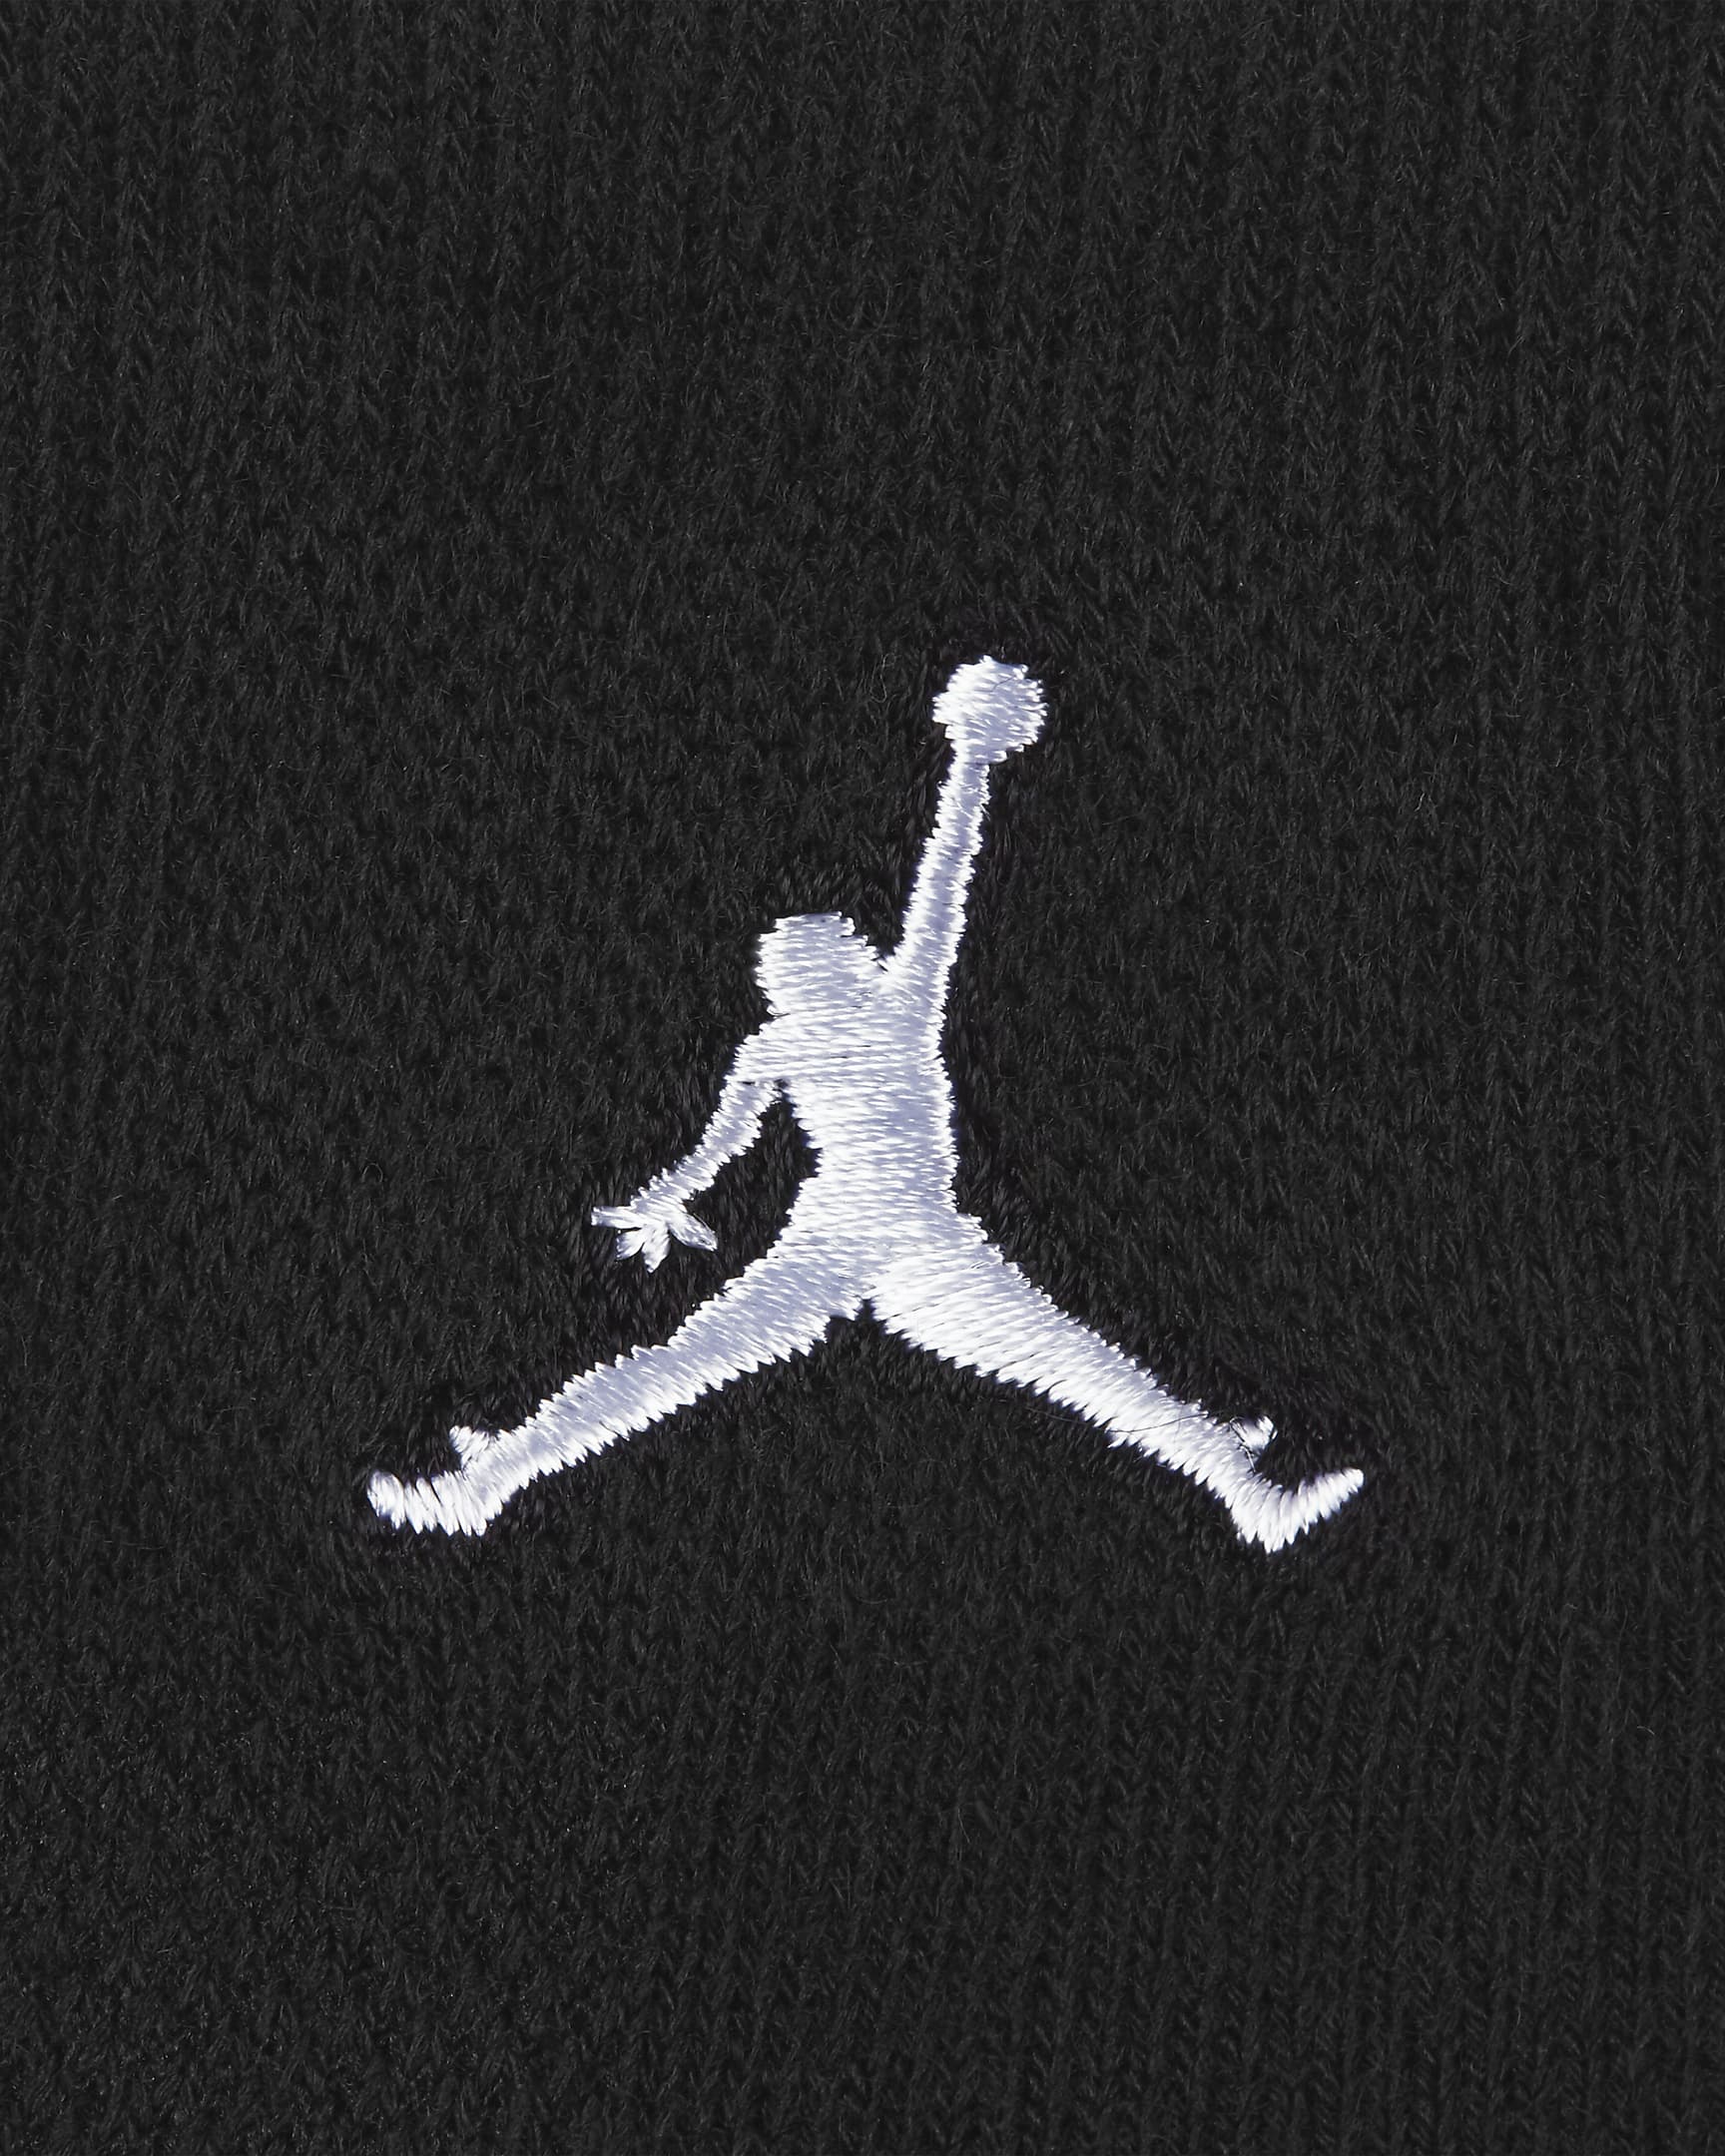 Jordan Legend Kids' Ankle Socks Box Set (6-Pairs). Nike.com